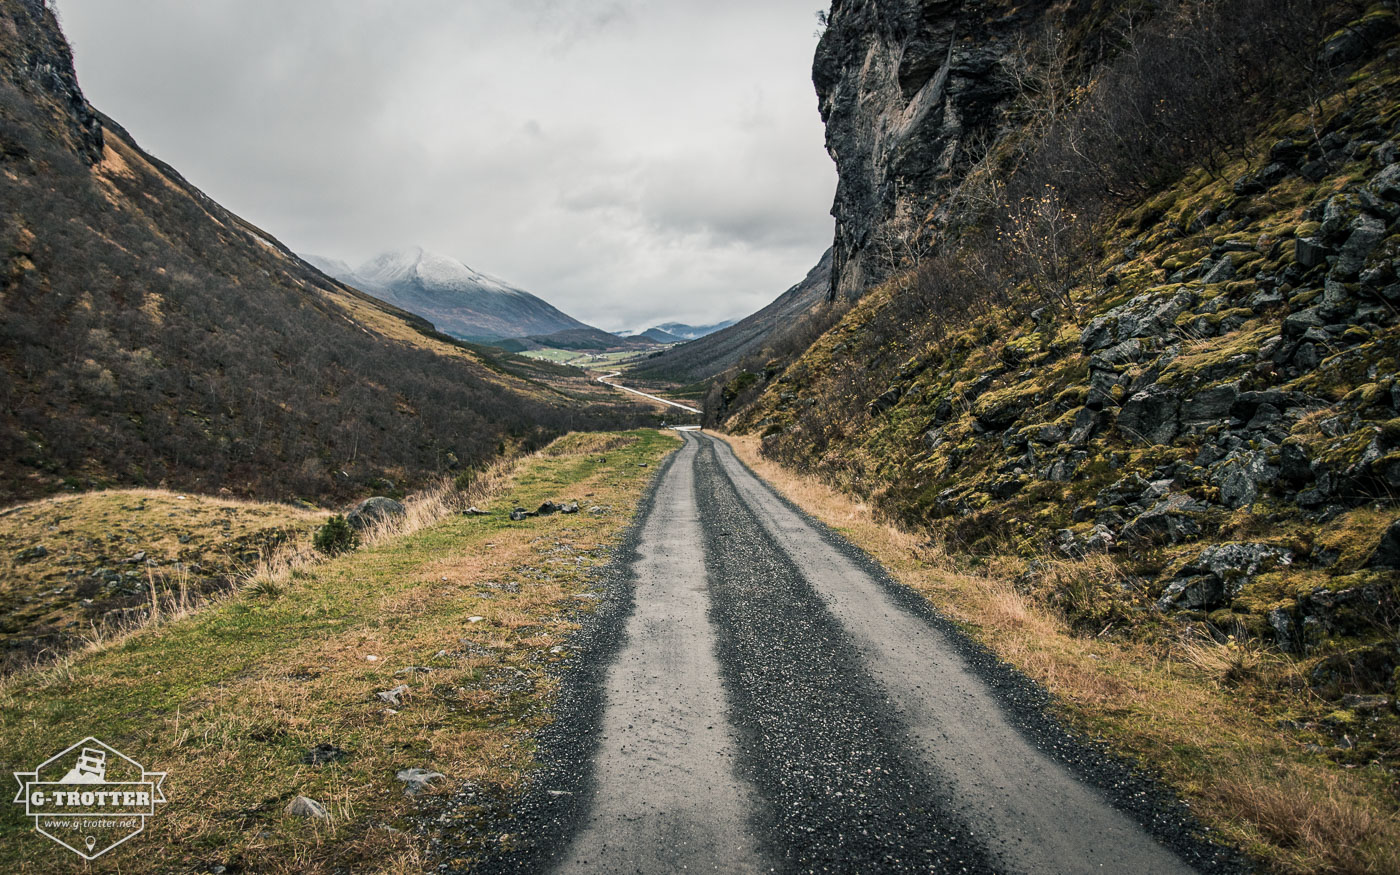 Bild 27 der Bildergalerie “Straßen von Norwegen”